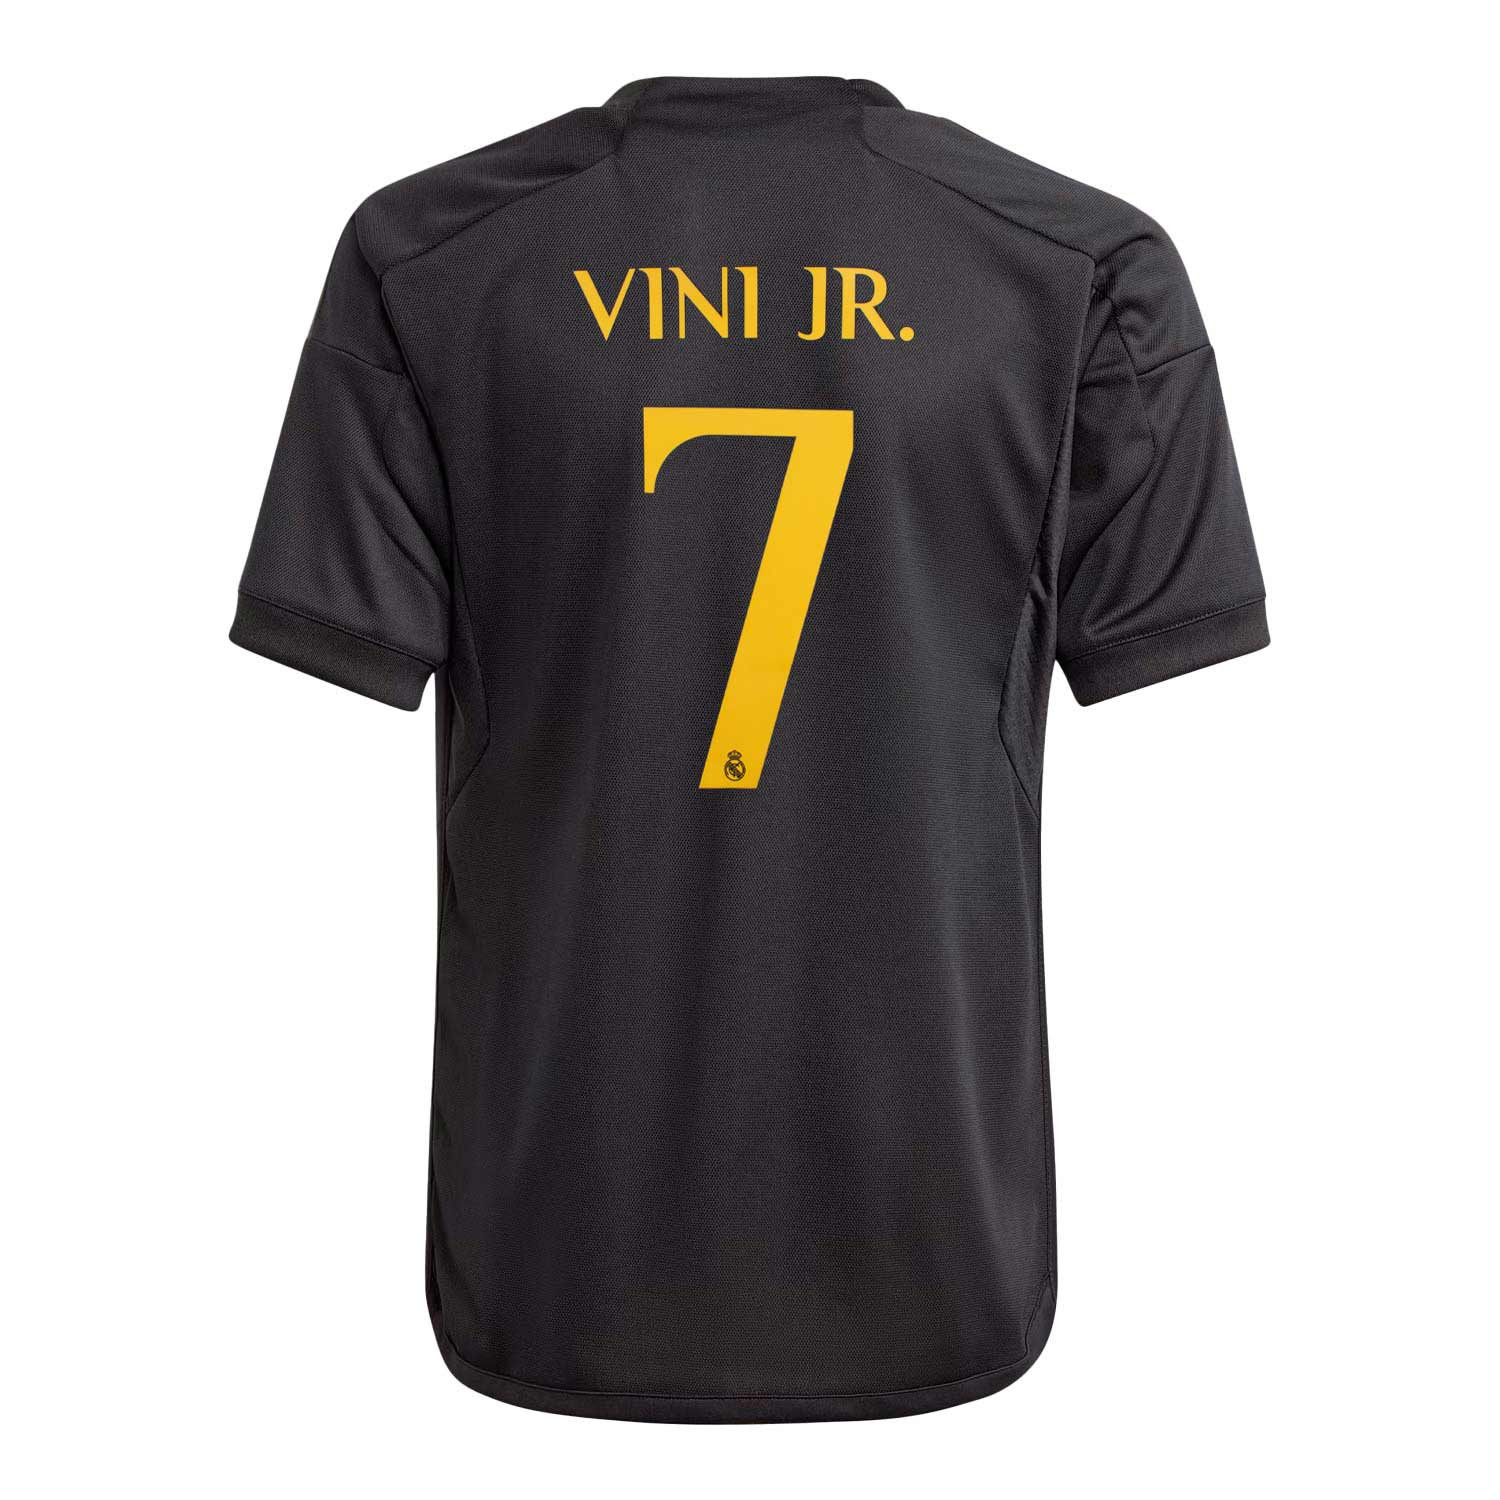 Real Madrid Conjunto Niño Camiseta y Pantalón - Vini JR 7